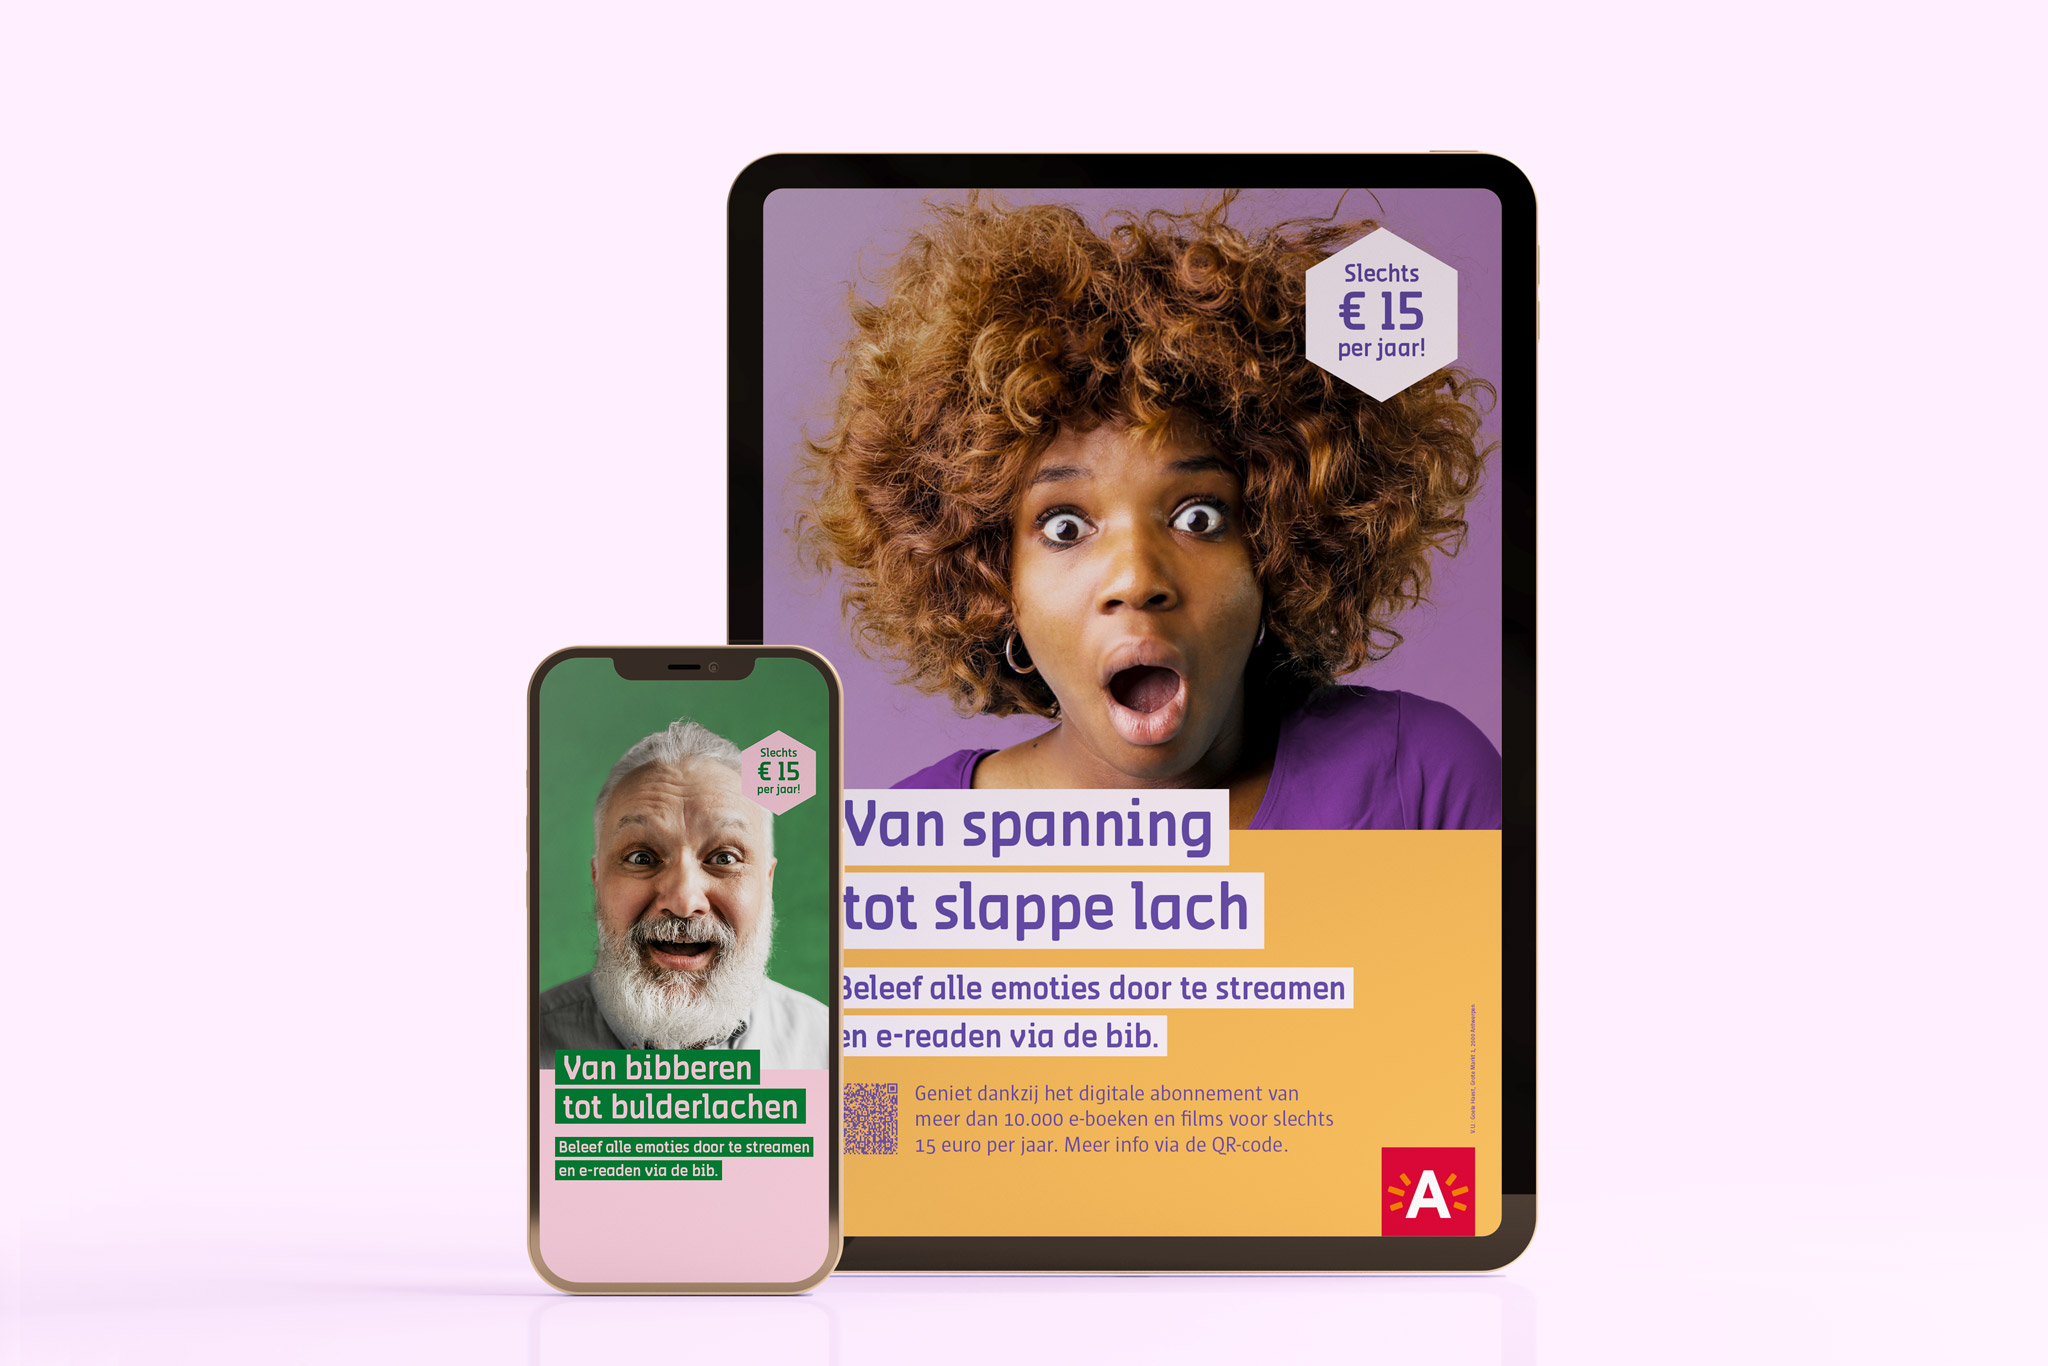 Campagne digitaal abonnement bibliotheken Antwerpen. Beleef alle emoties door te streamen en e-readen via de bib.